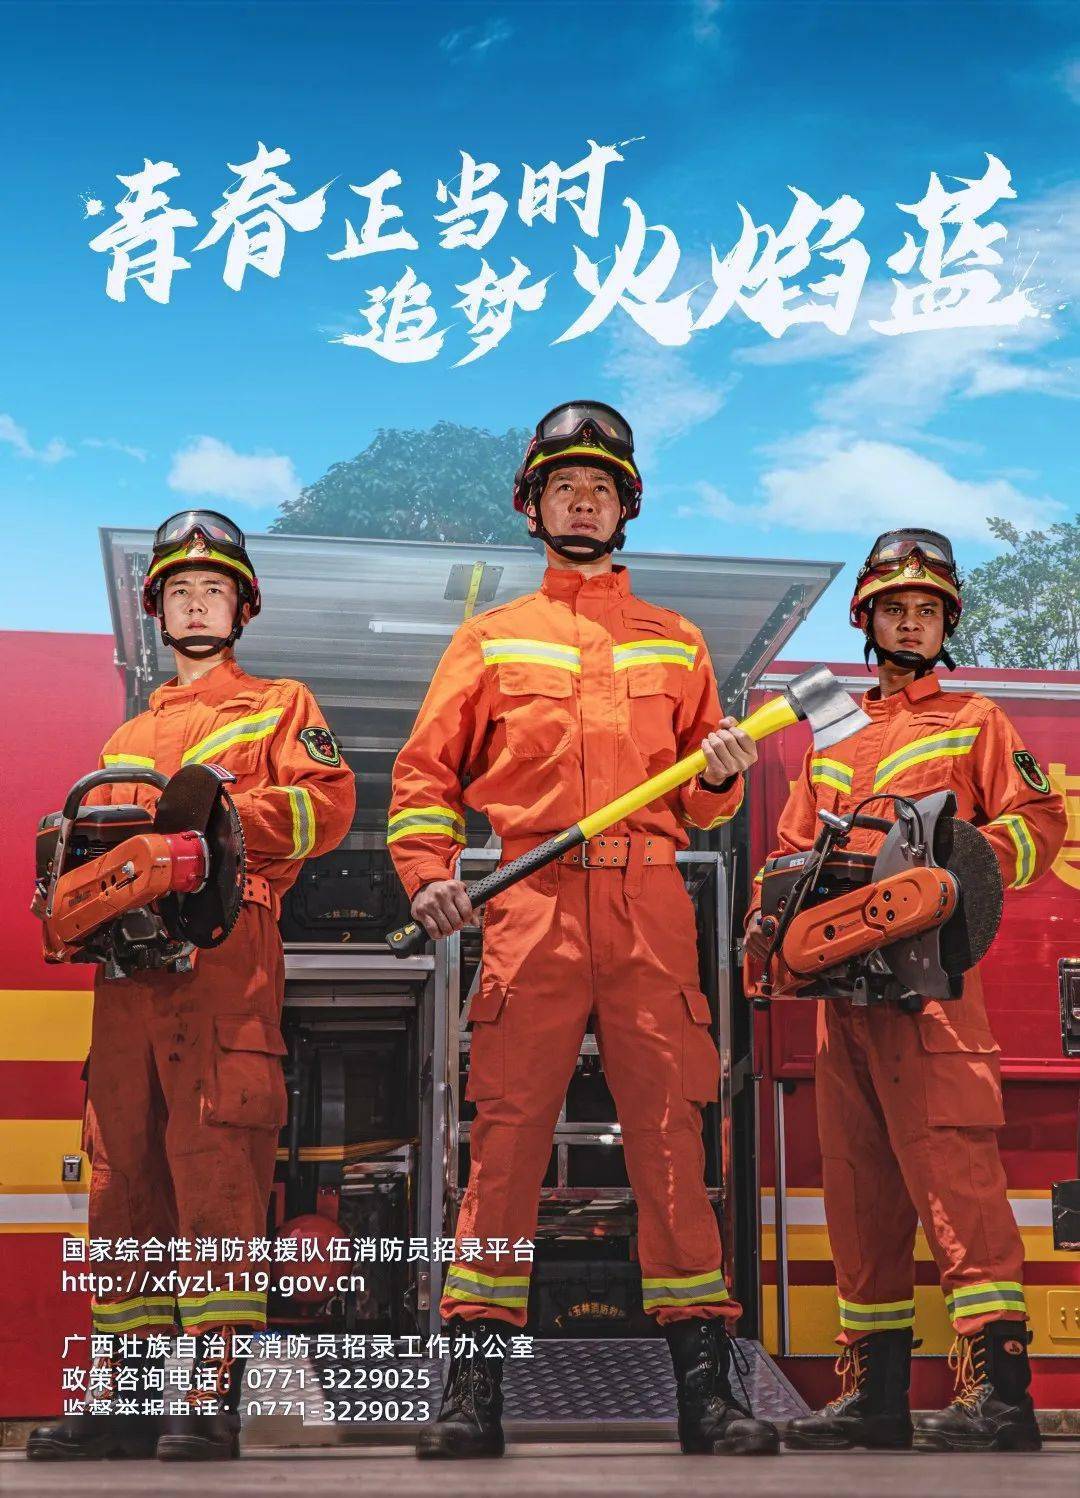 公告国家综合性消防救援队伍2020年面向社会招录消防员